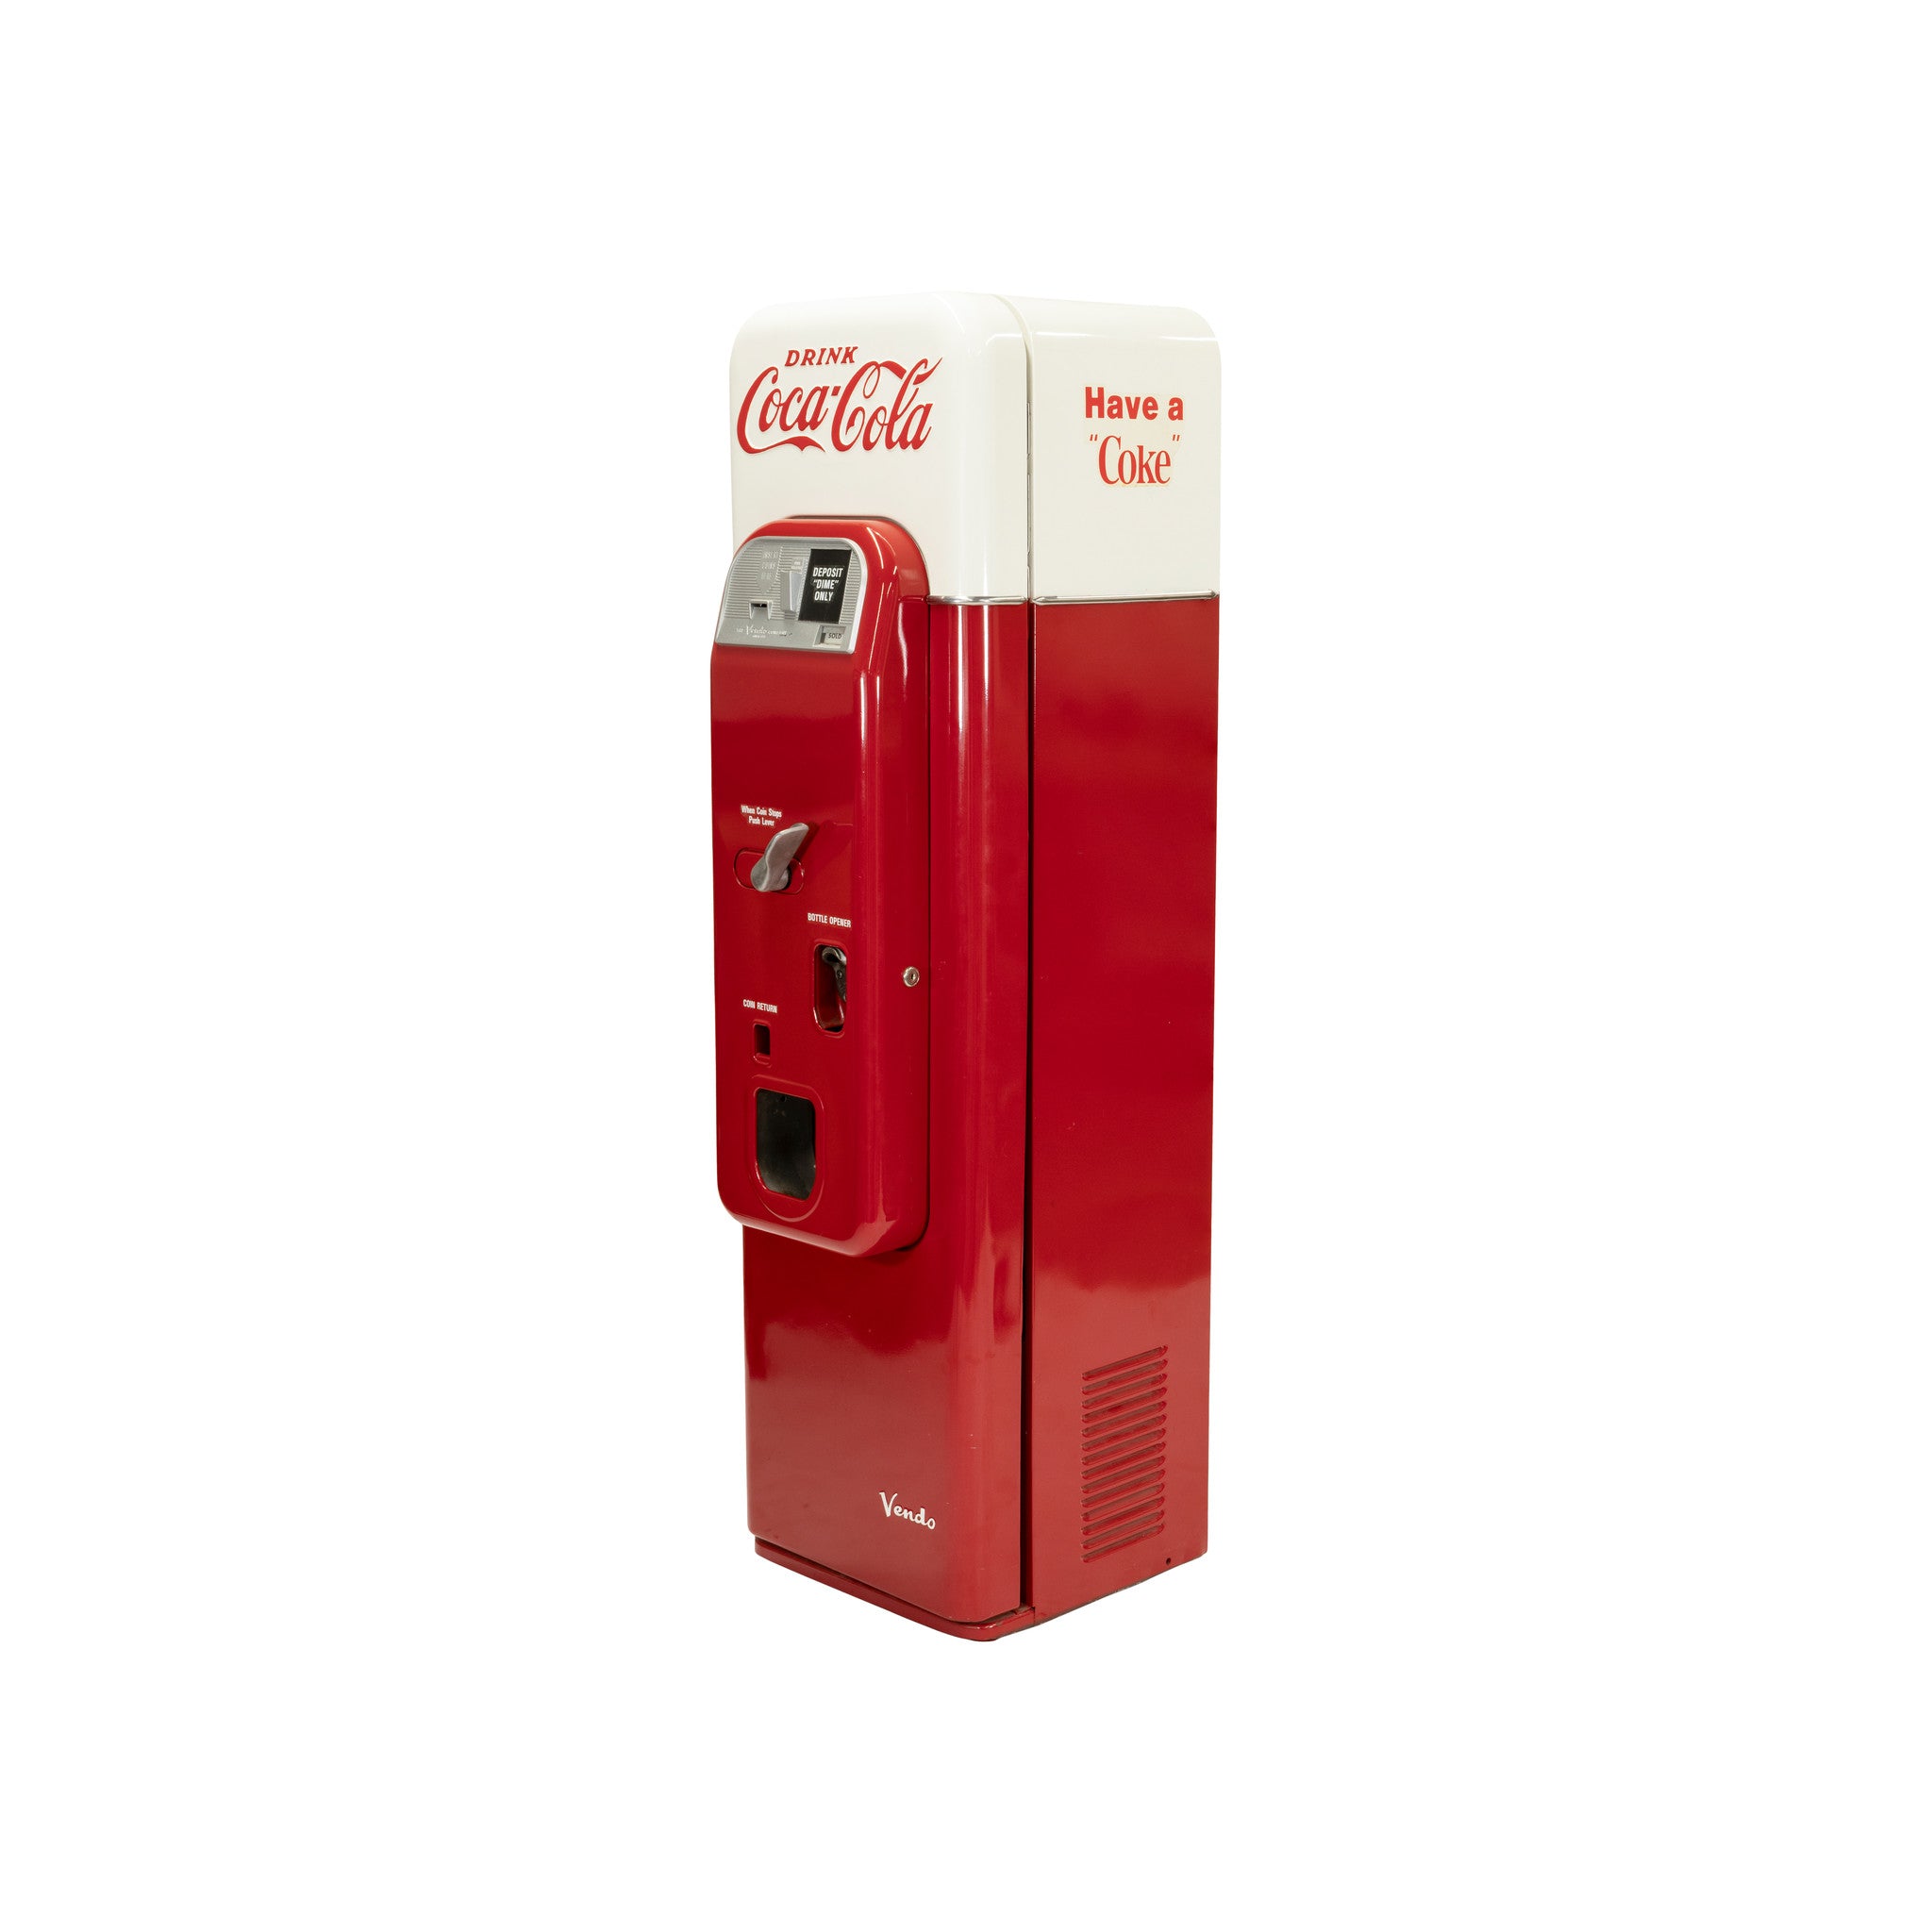 Vendo Model 44 Coke Machine